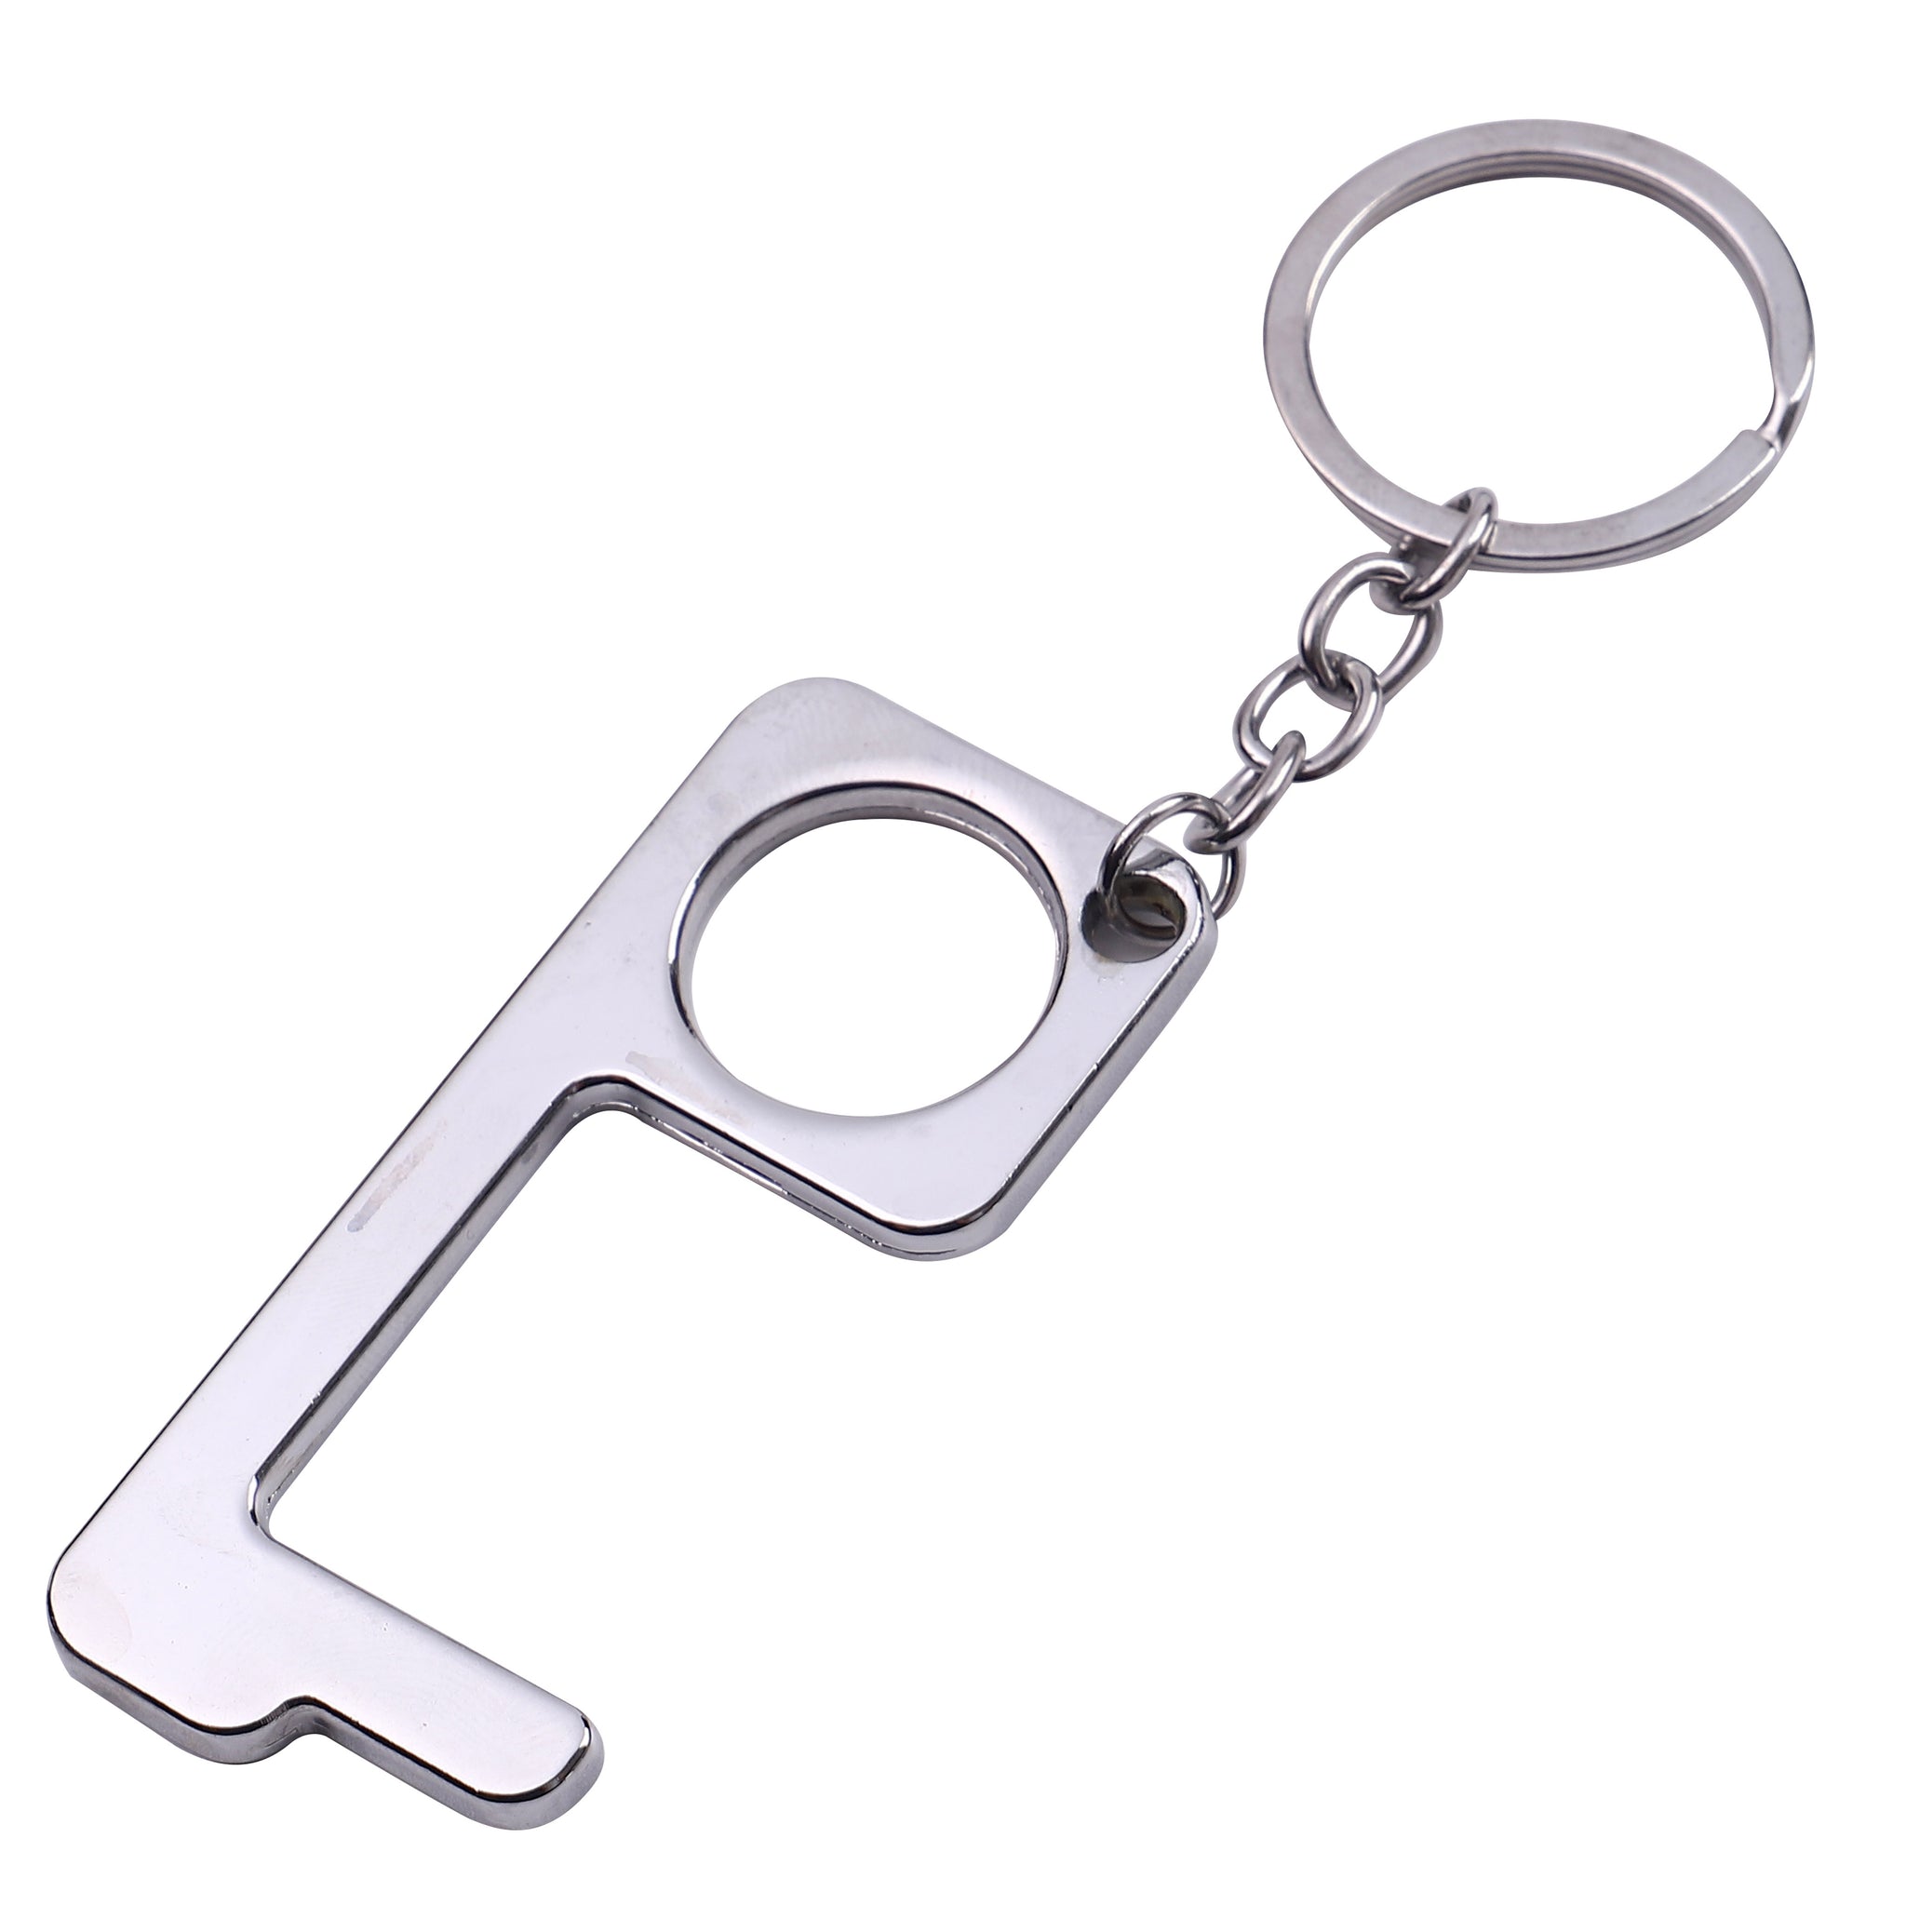 Metal Hands Free Wholesale Key Chain & Door Opener - 4 colors